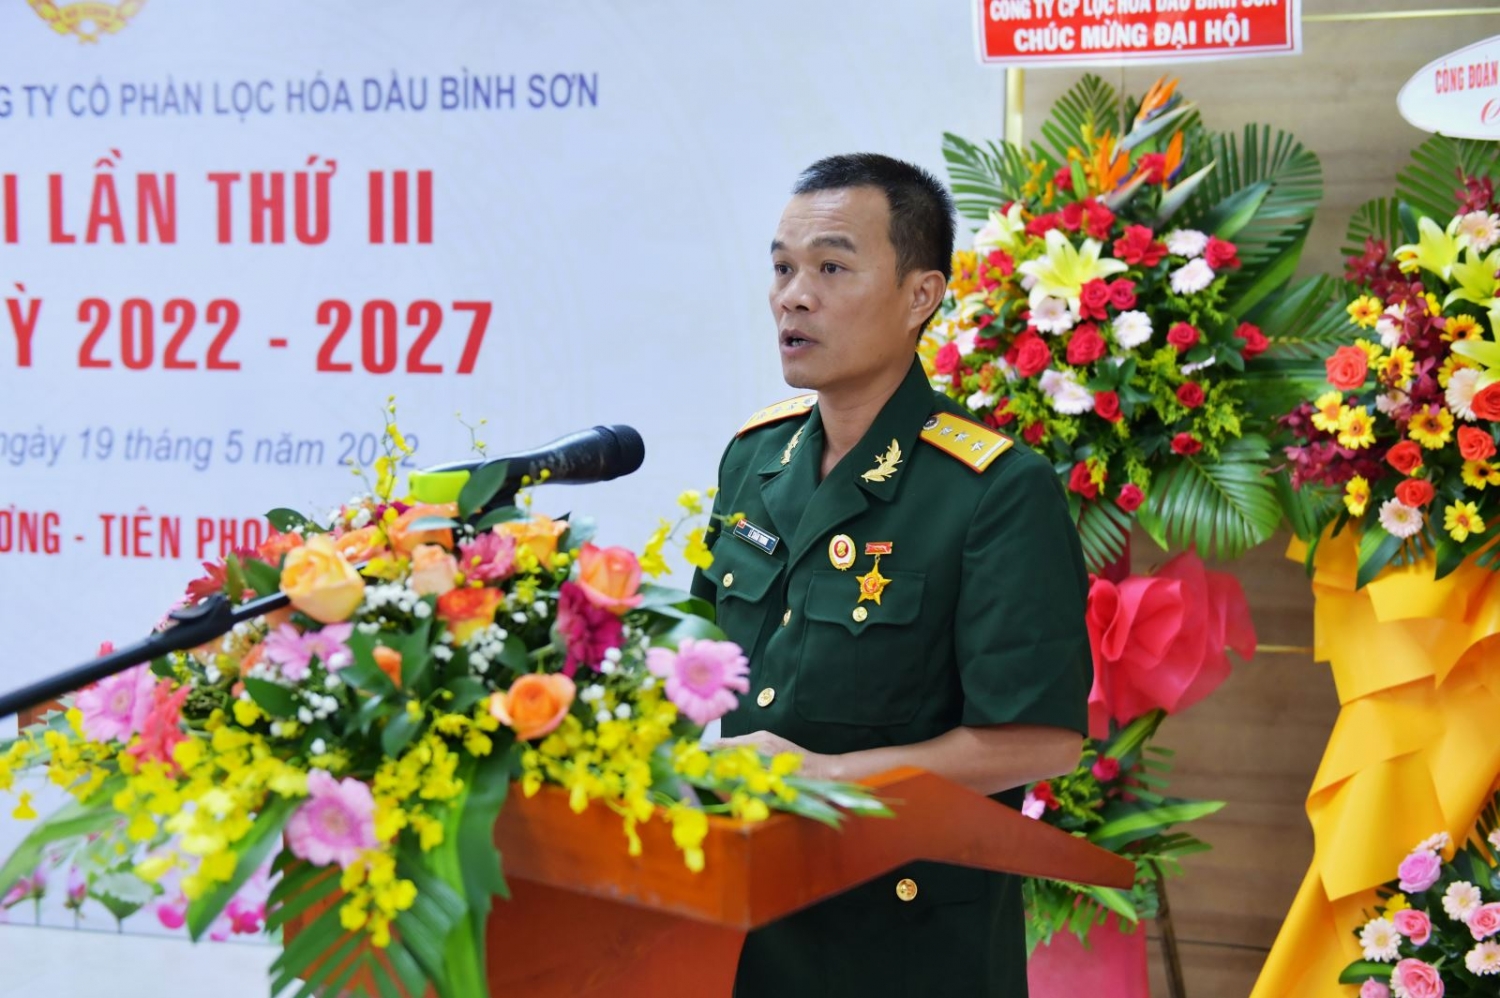 Hội CCB BSR tổ chức Đại hội lần thứ III nhiệm kỳ 2022 - 2027